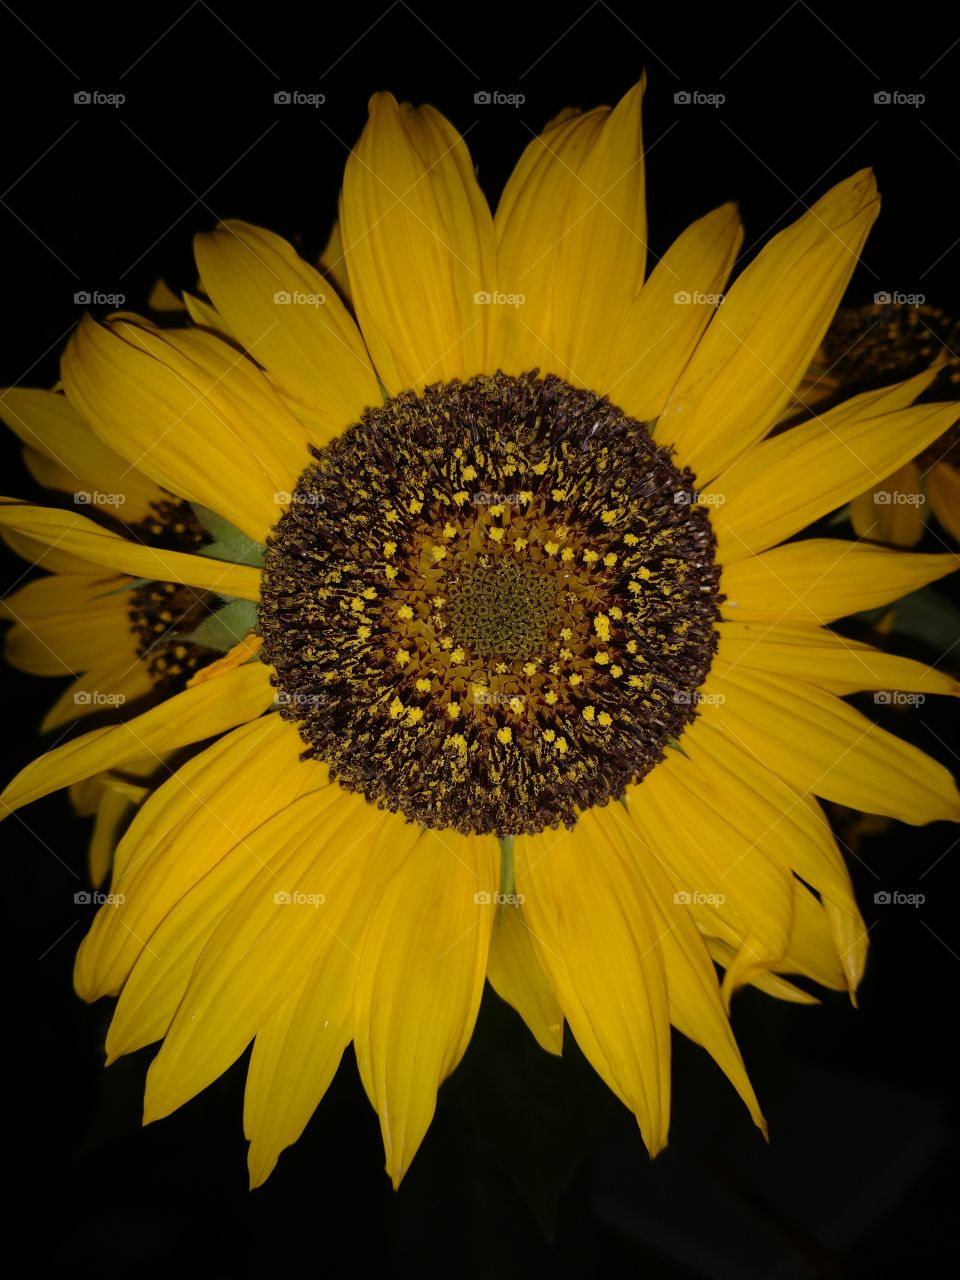 Black Background Sunflower